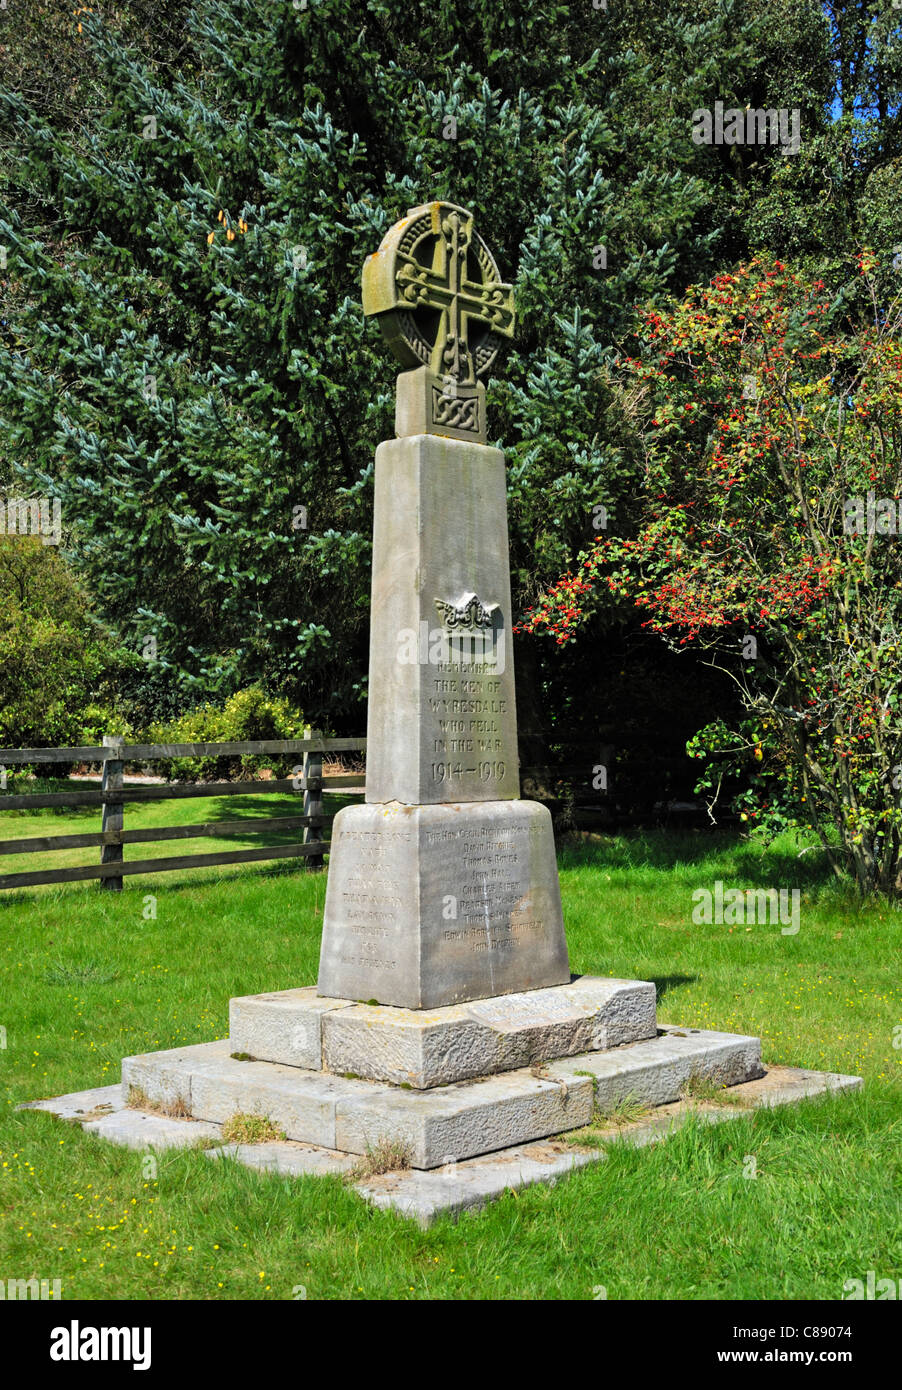 Wyresdale War Memorial. La Iglesia de Cristo. Más Wyresdale, Lancashire, Inglaterra, Reino Unido, Europa. Foto de stock